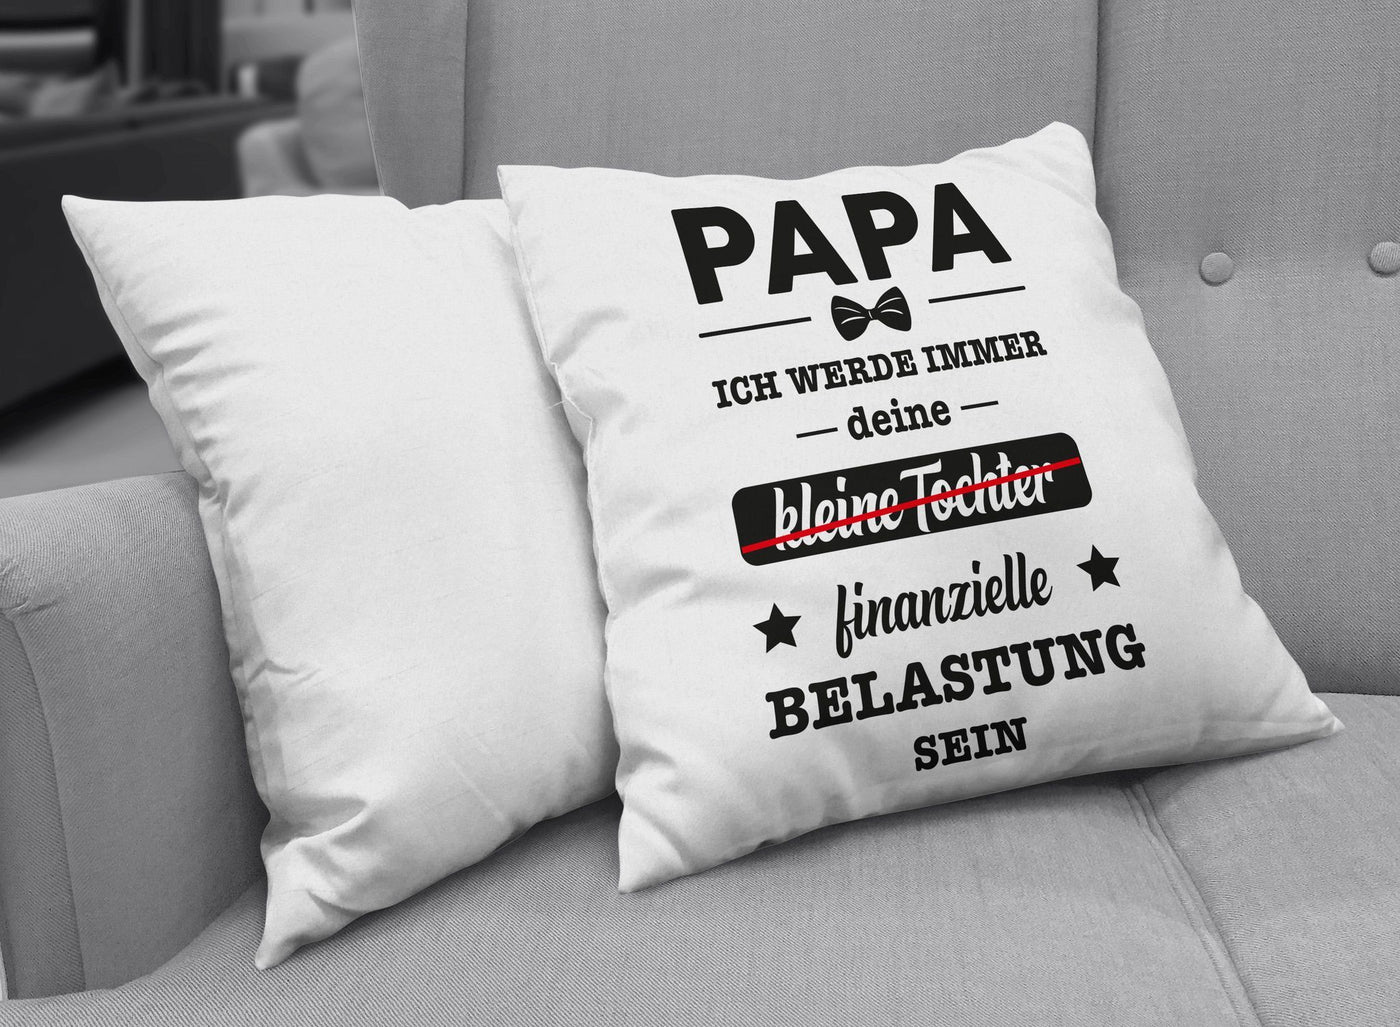 Bild: Kissen - Papa ich werde immer deine (kleine Tochter) finanzielle Belastung sein Geschenkidee